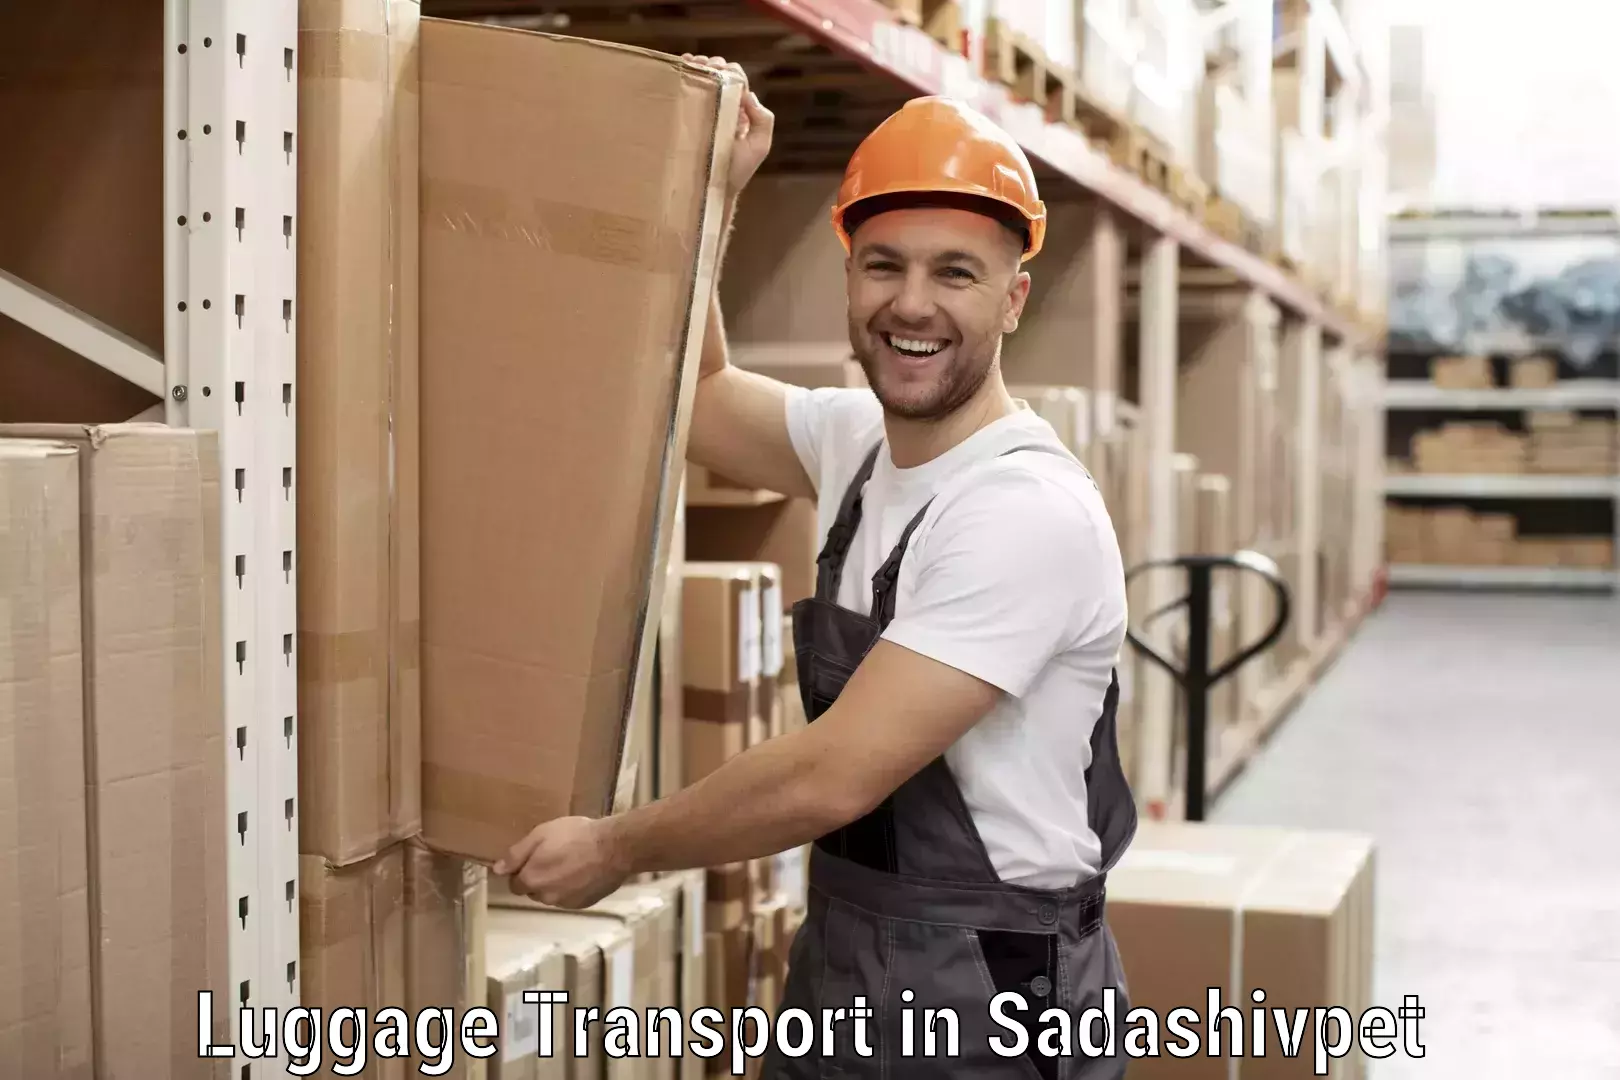 Luggage transport tips in Sadashivpet